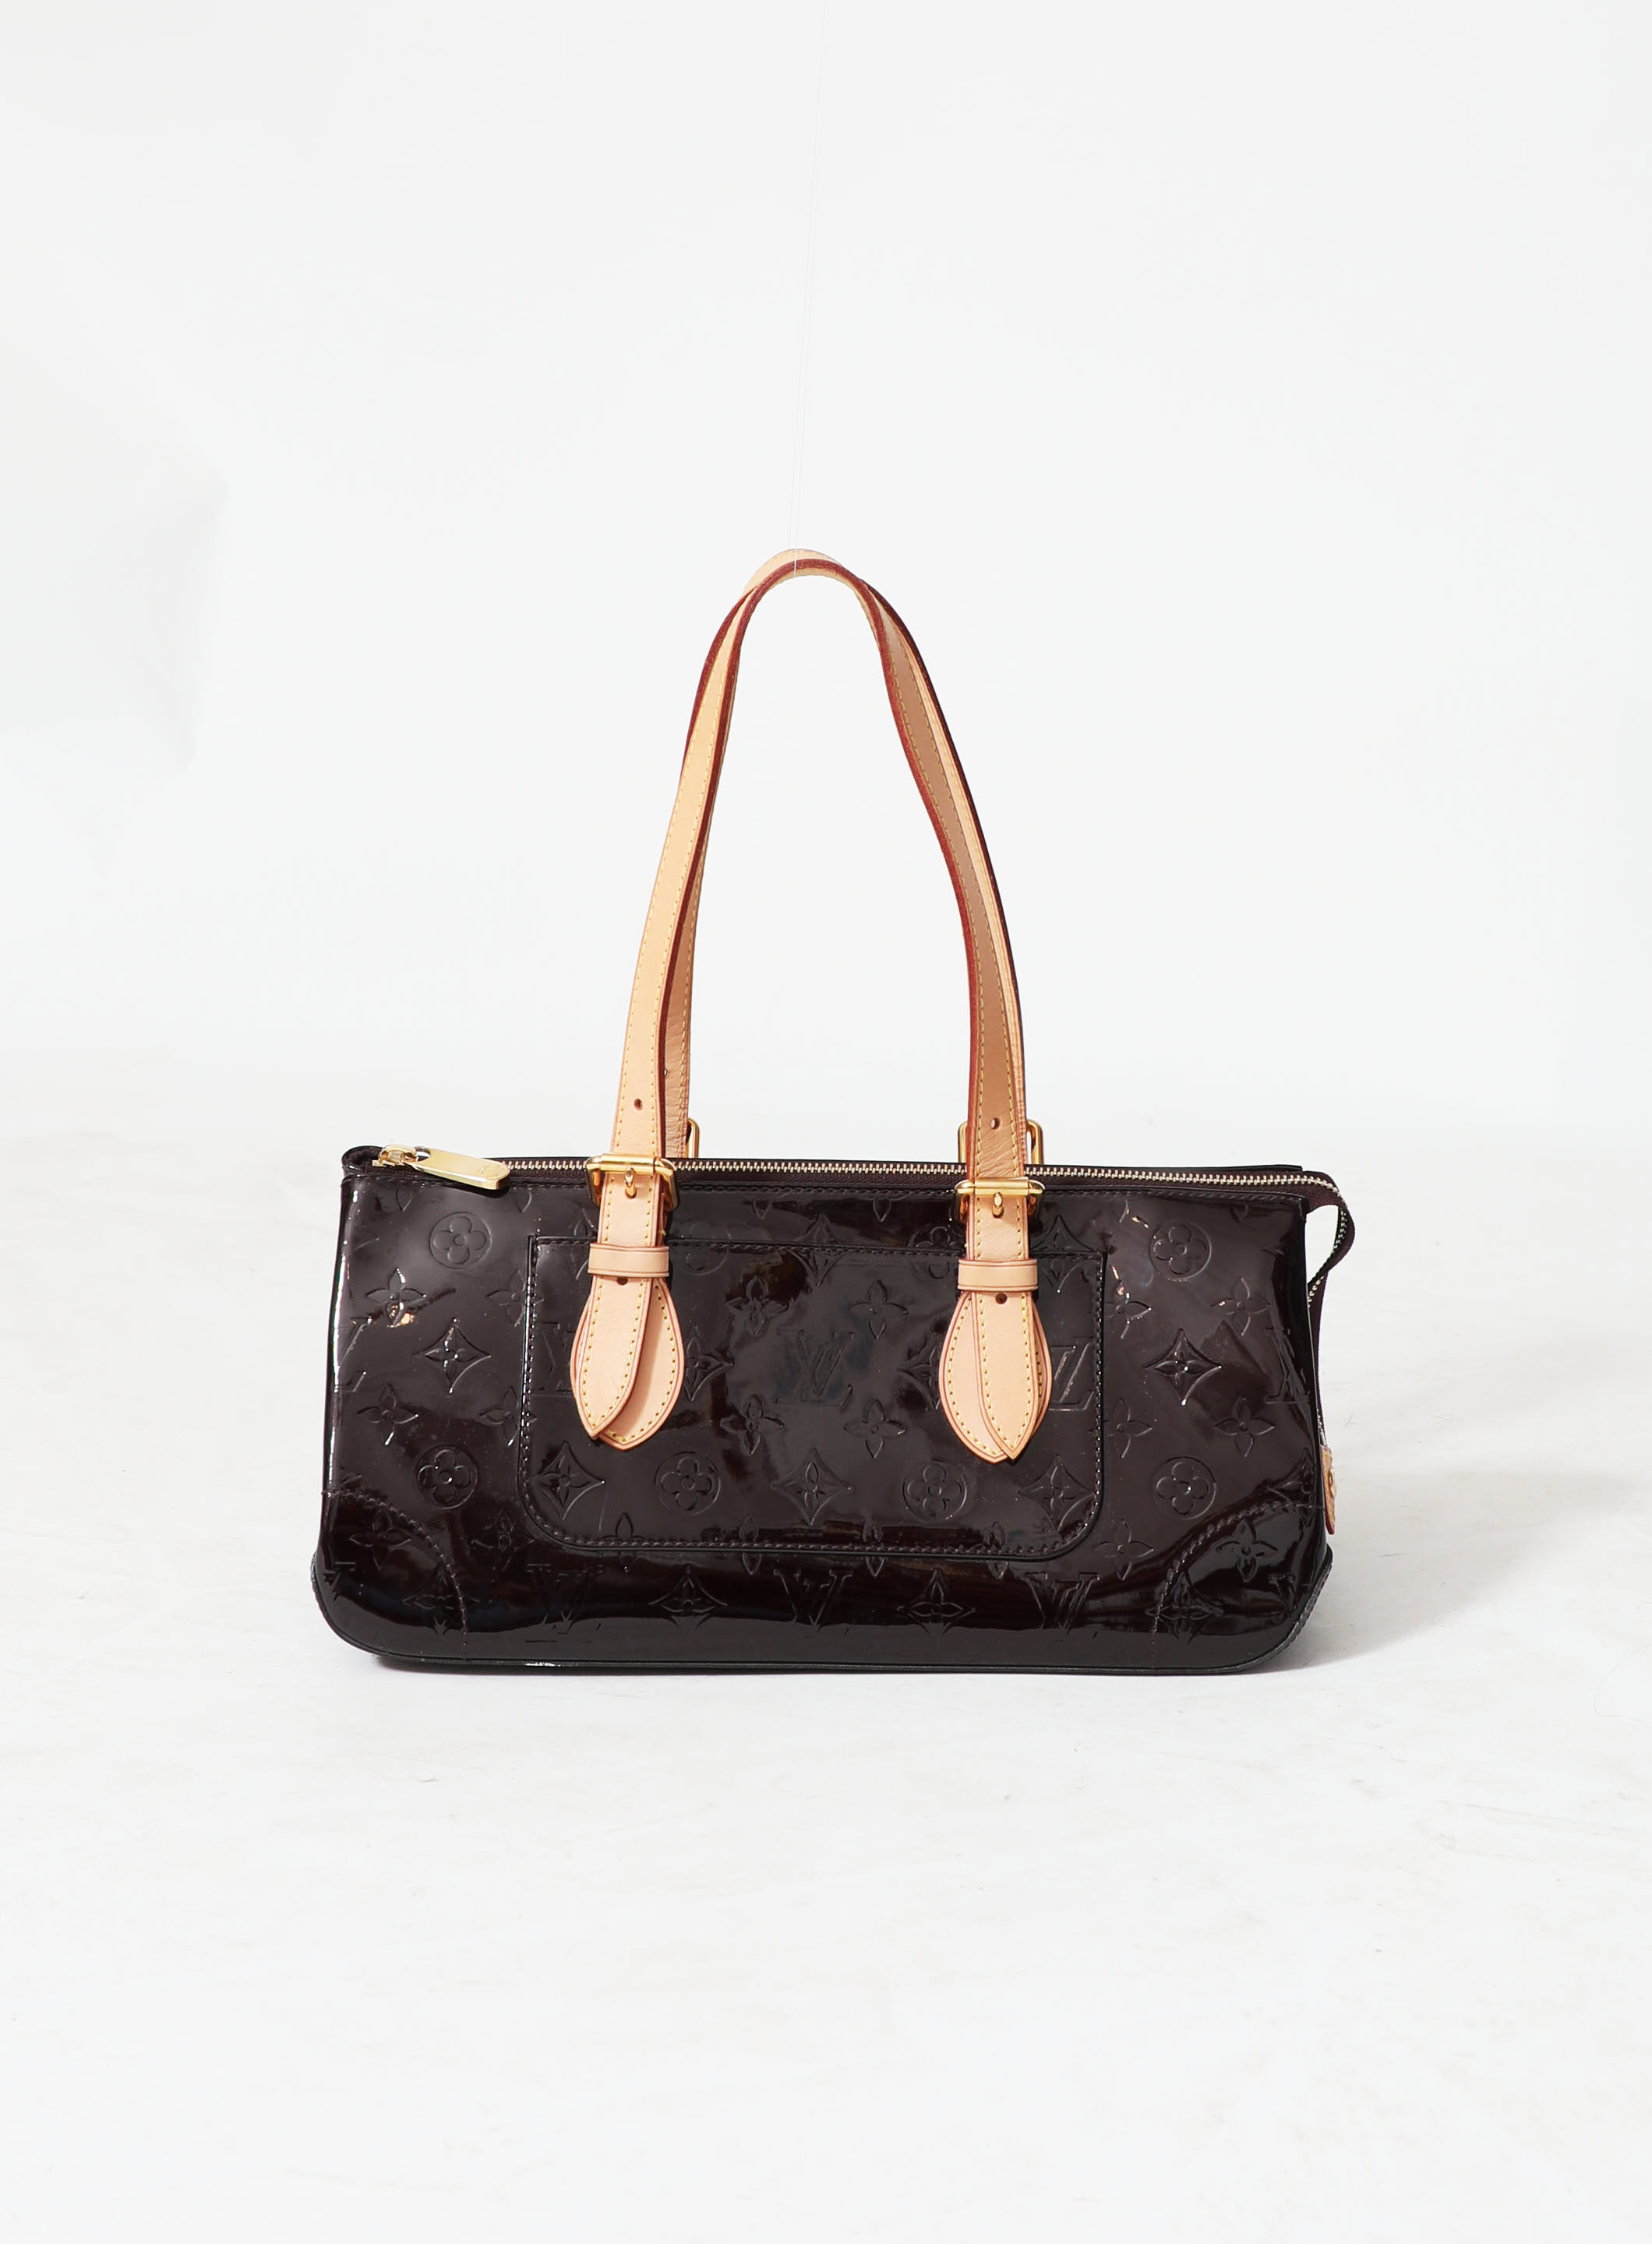 Louis Vuitton Amarante Vernis Leather Adjustable Bag Strap Louis Vuitton